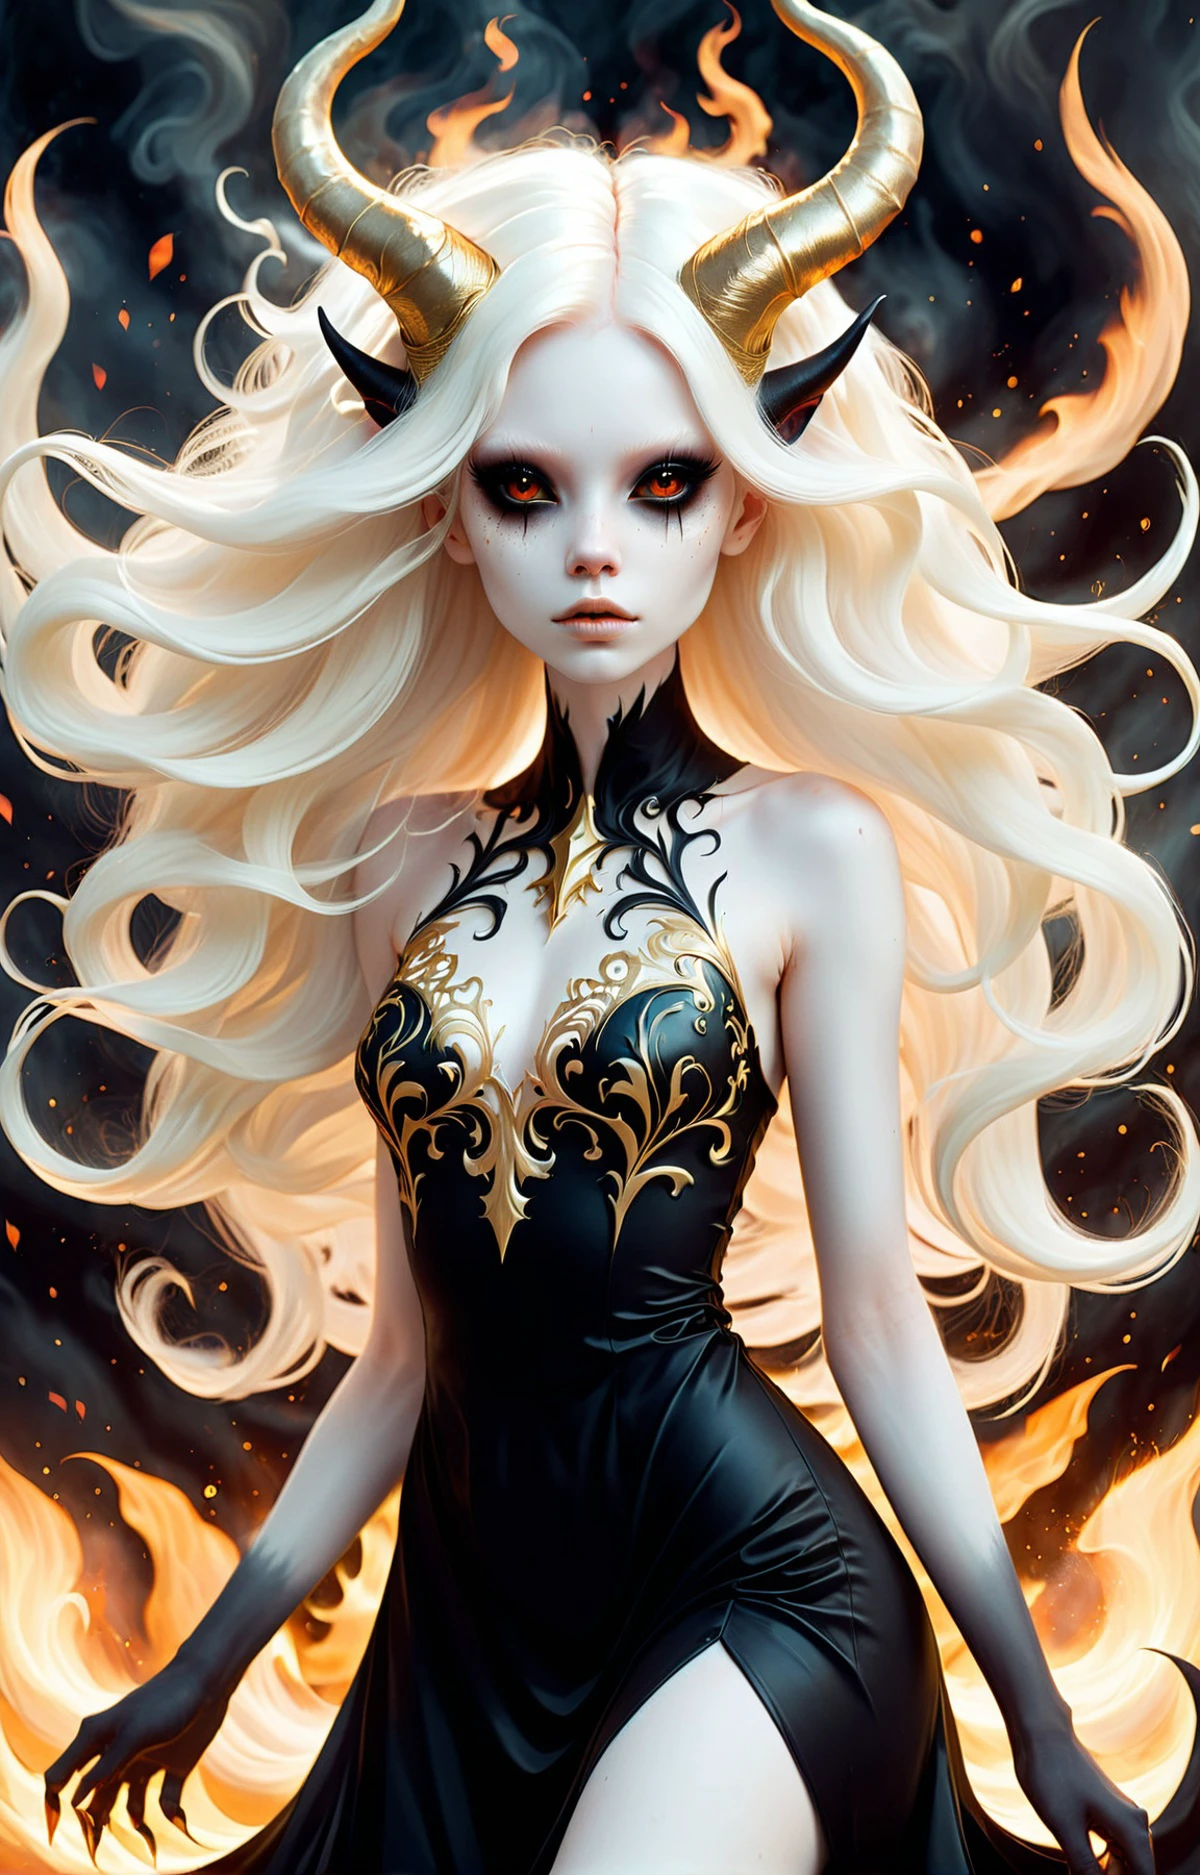 抽象的な幾何学的なグラデーション, (メリッサ・ローネイ), 深い黒い目をした美しい女性の悪魔の暗く陰気な胴体ショット, 非常に白い肌のアルビノ, 風になびく長い髪, 浮遊する火の粒子, 金細工, 黒のラテックスドレス, (長くて複雑な角:1.2) 暗い, 図, シュールなファンタジー